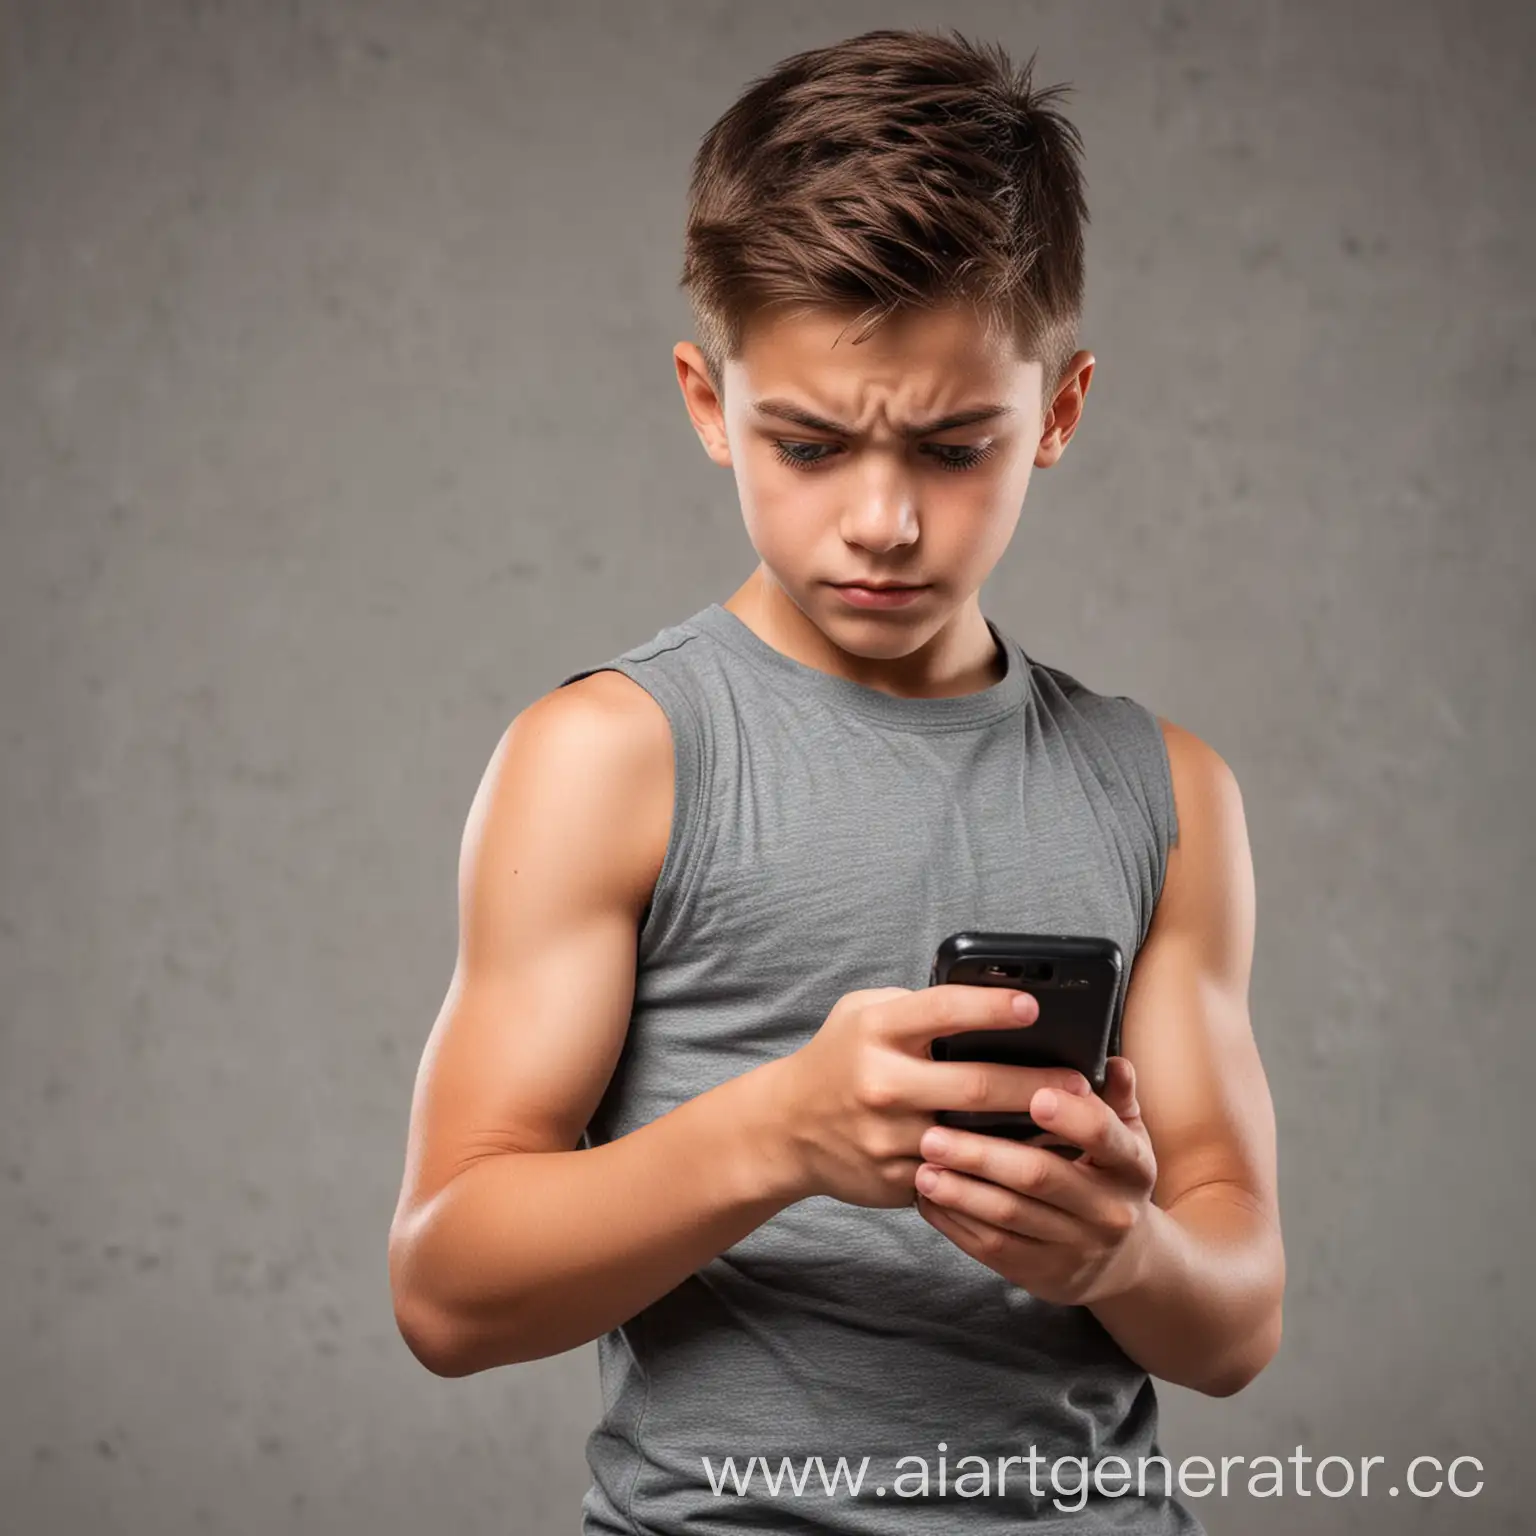 Мускулистый школьник с маленькой лобной долей агрессивно печатает в телефоне сообщение